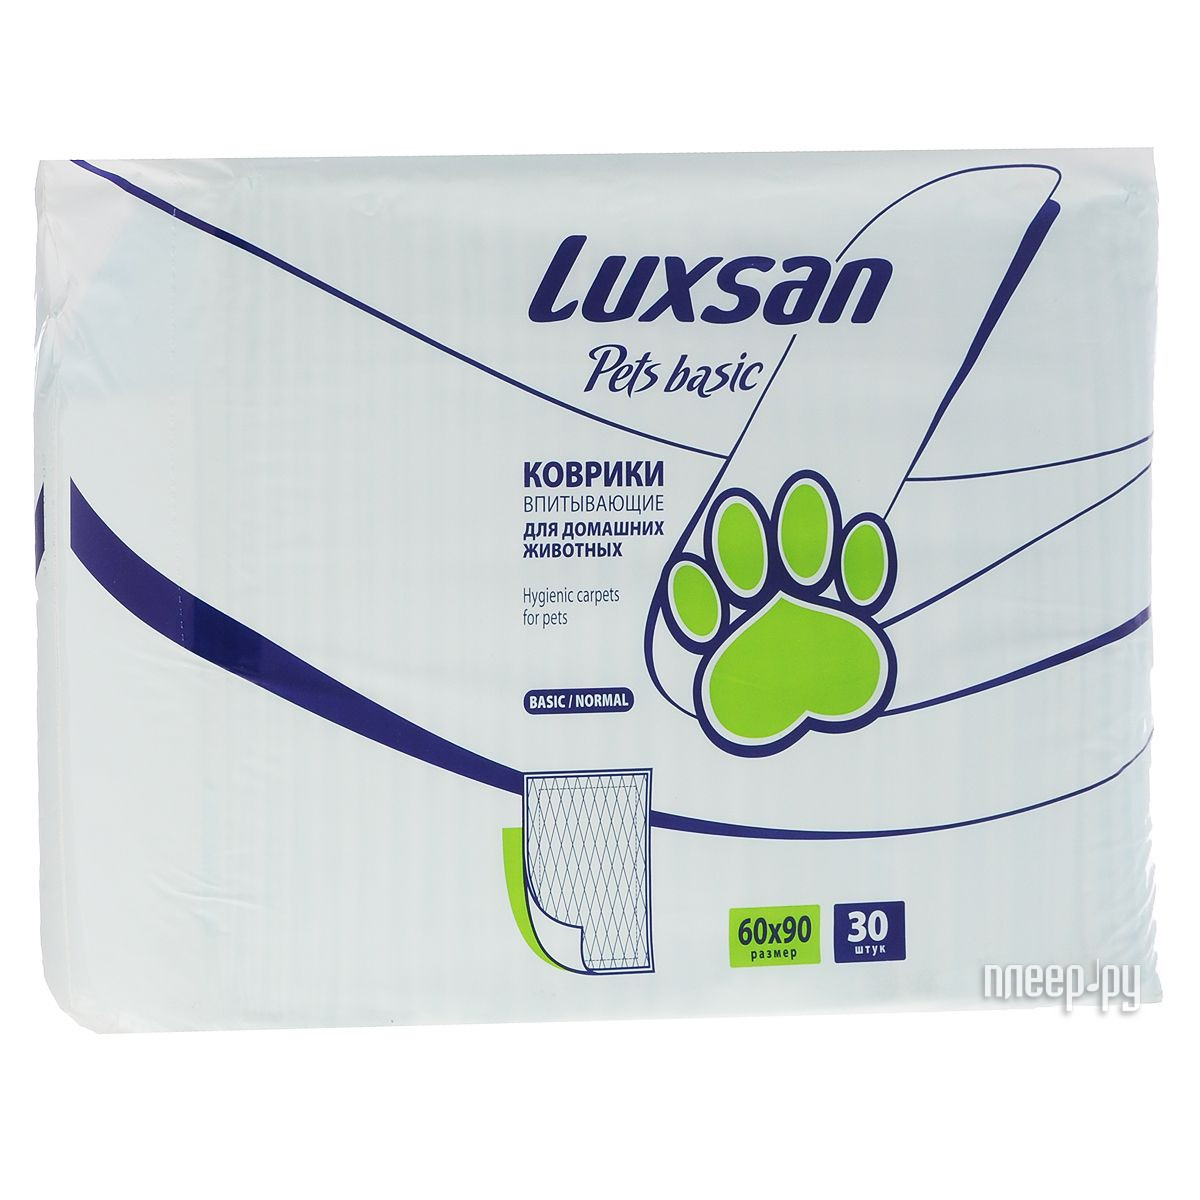  Luxsan Pets Basic 30 60x90cm 30 3690301  786 